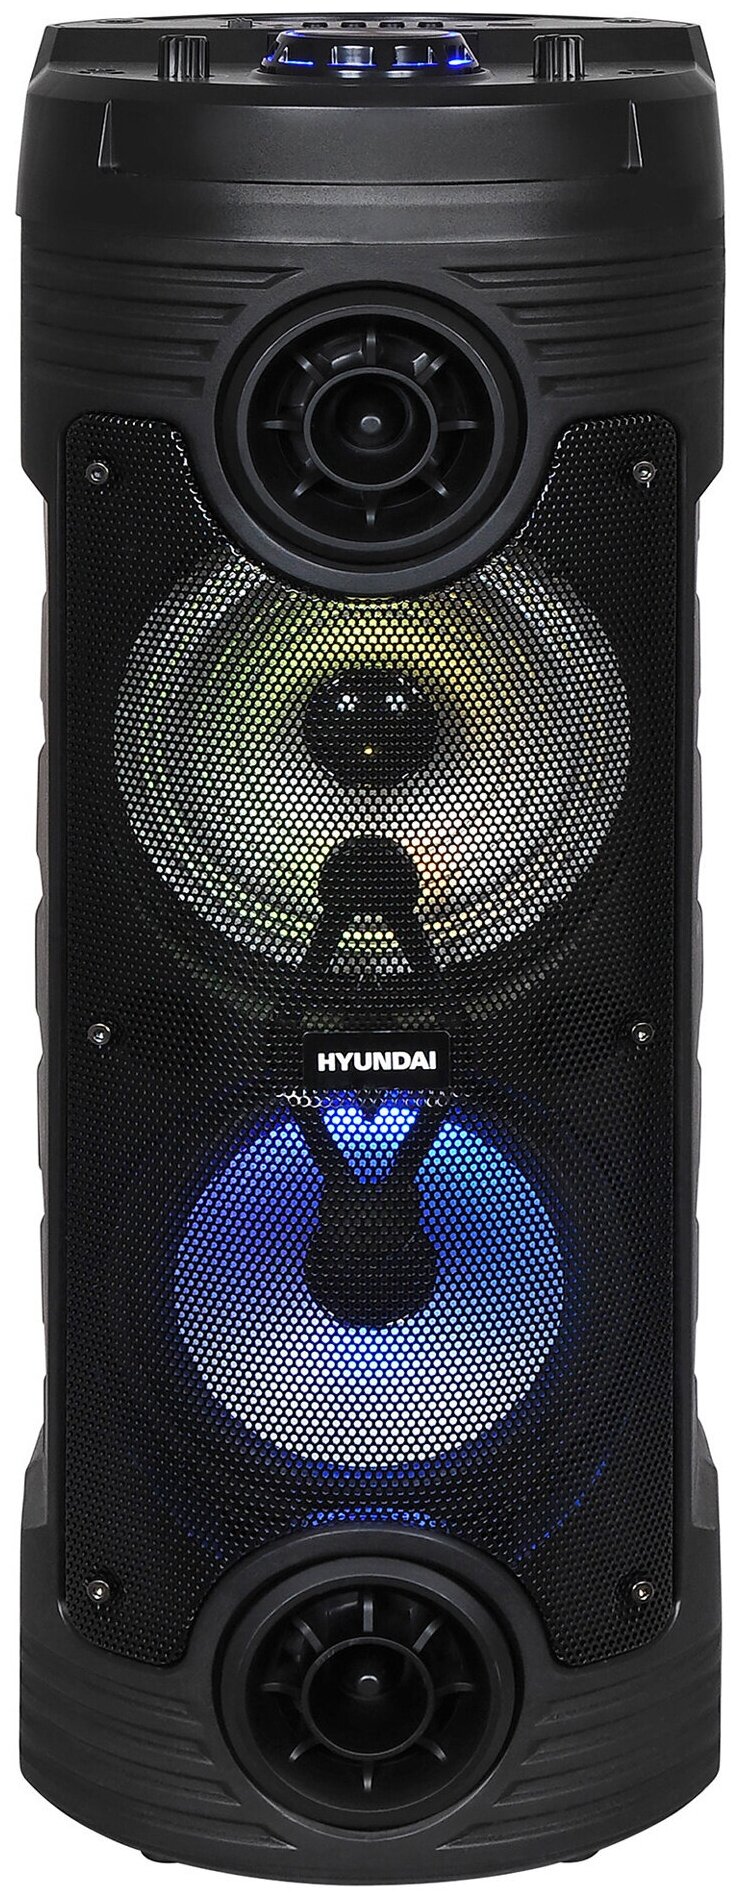 Минисистема Hyundai H-MC170 черный, 80 Вт/FM/USB/BT/SD/MMC